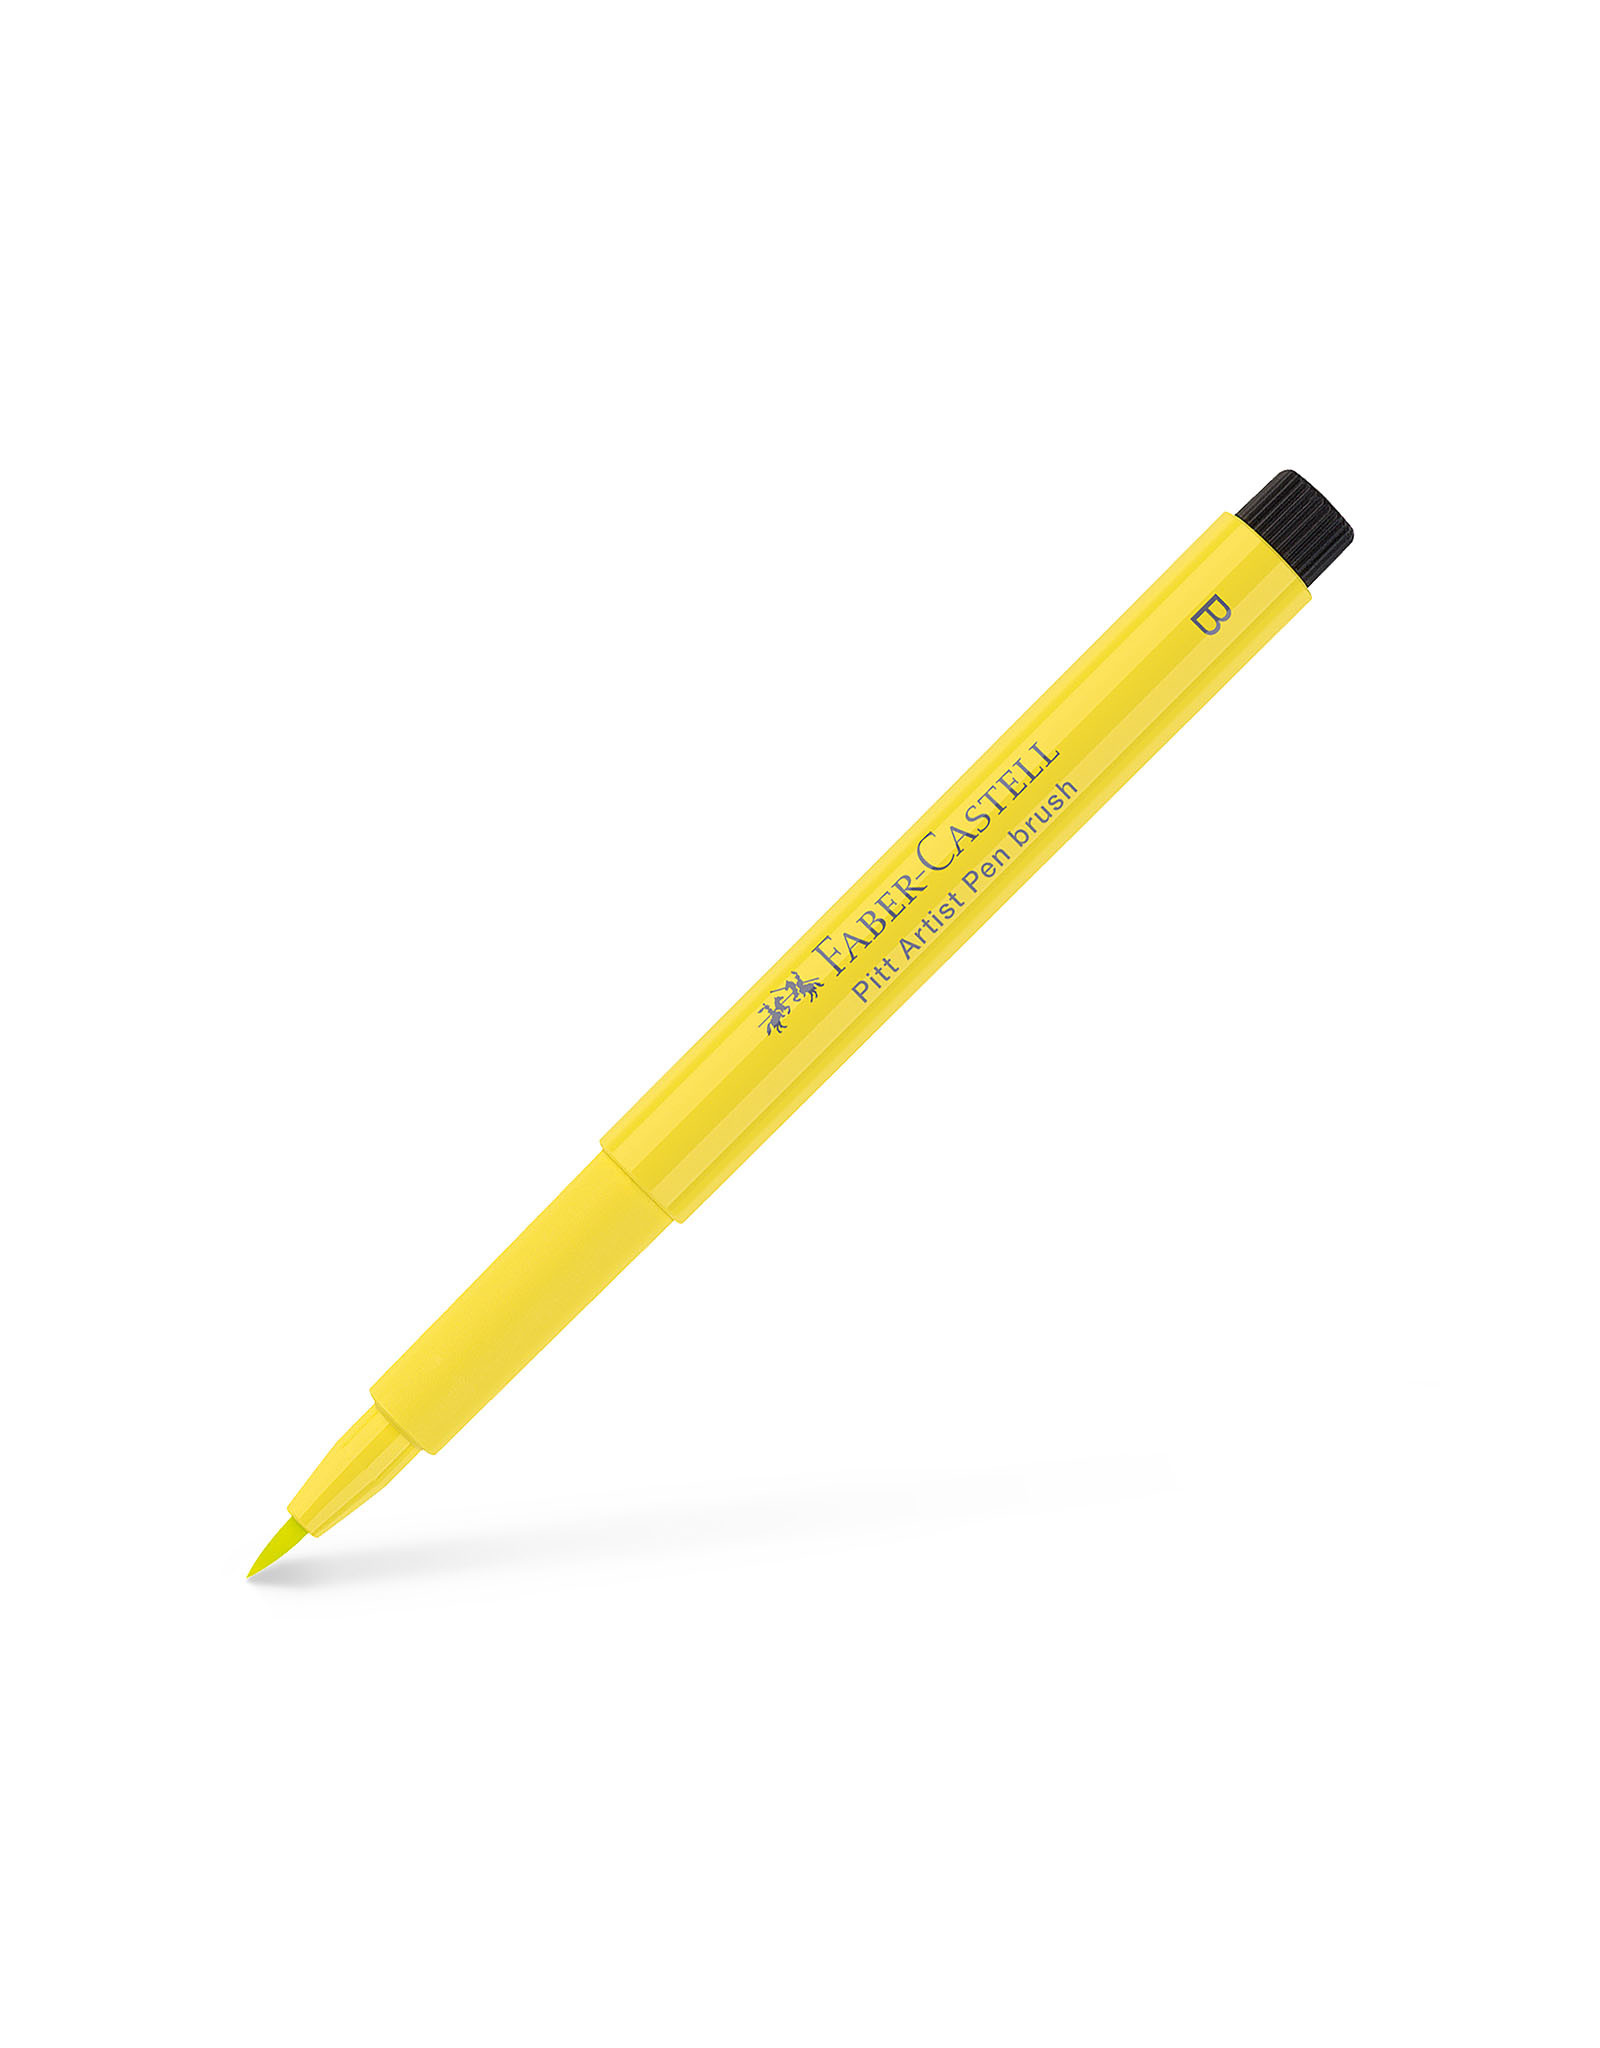 FABER-CASTELL Pitt Artist Pen, Brush, Light Yellow Glaze